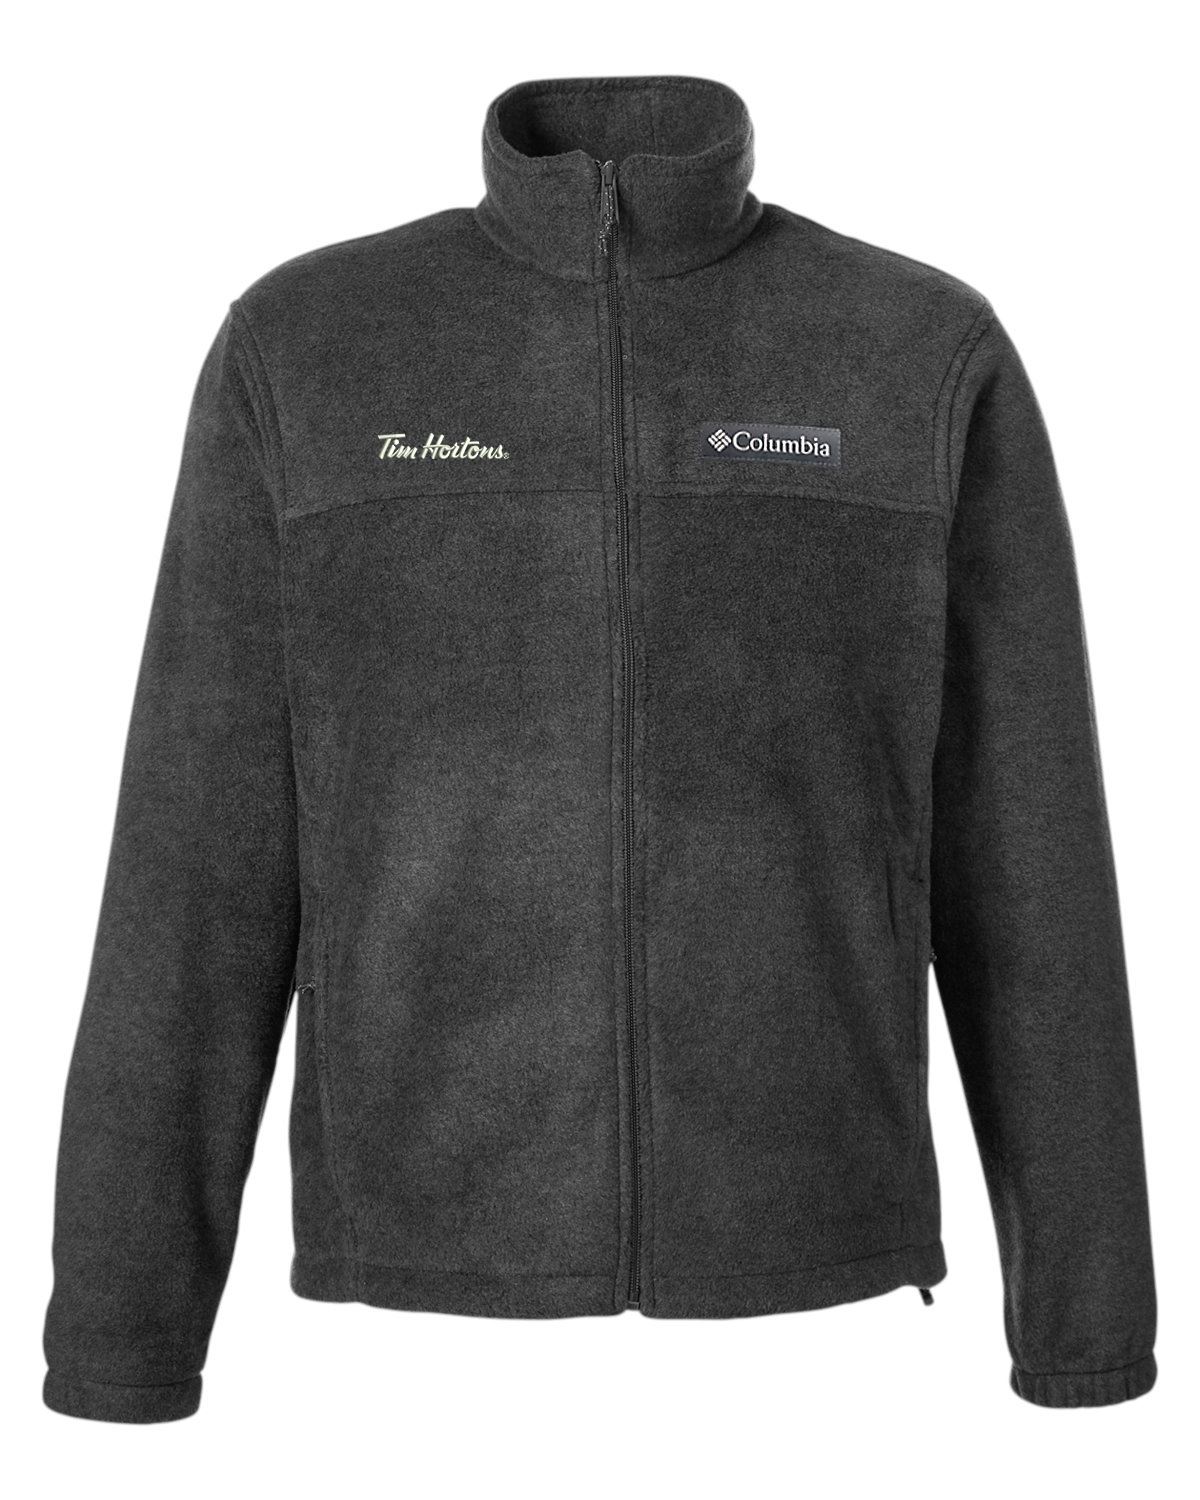 Tim Hortons Online Apparel. Columbia Fleece Jacket